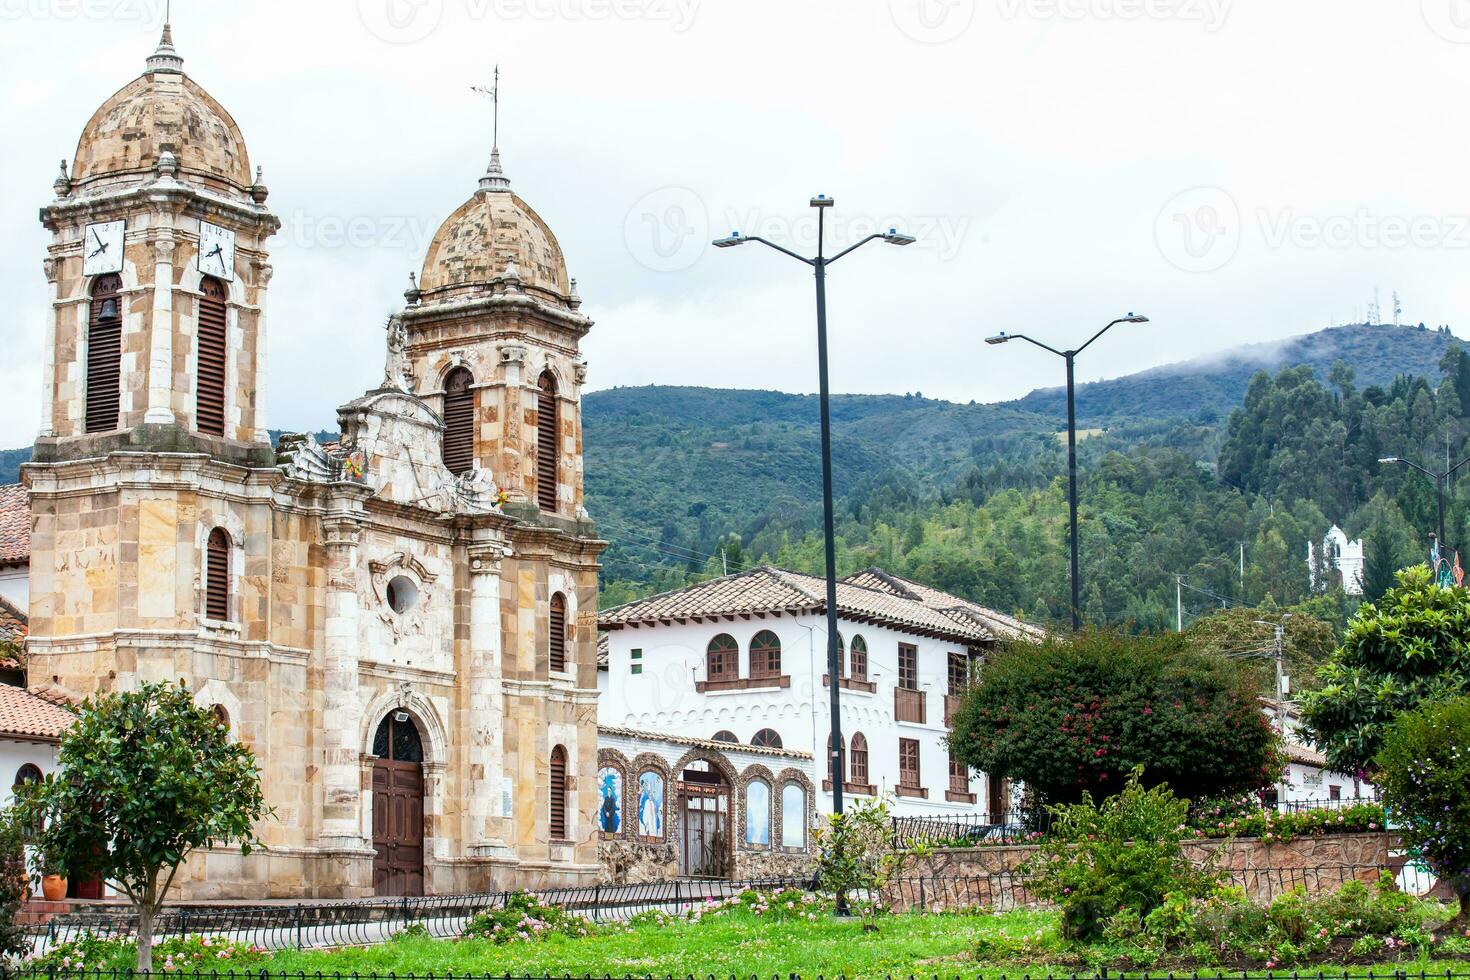 historisk vår lady av de radband kyrka på de central fyrkant av de små stad av tibasosa belägen i de boyaca avdelning i colombia foto